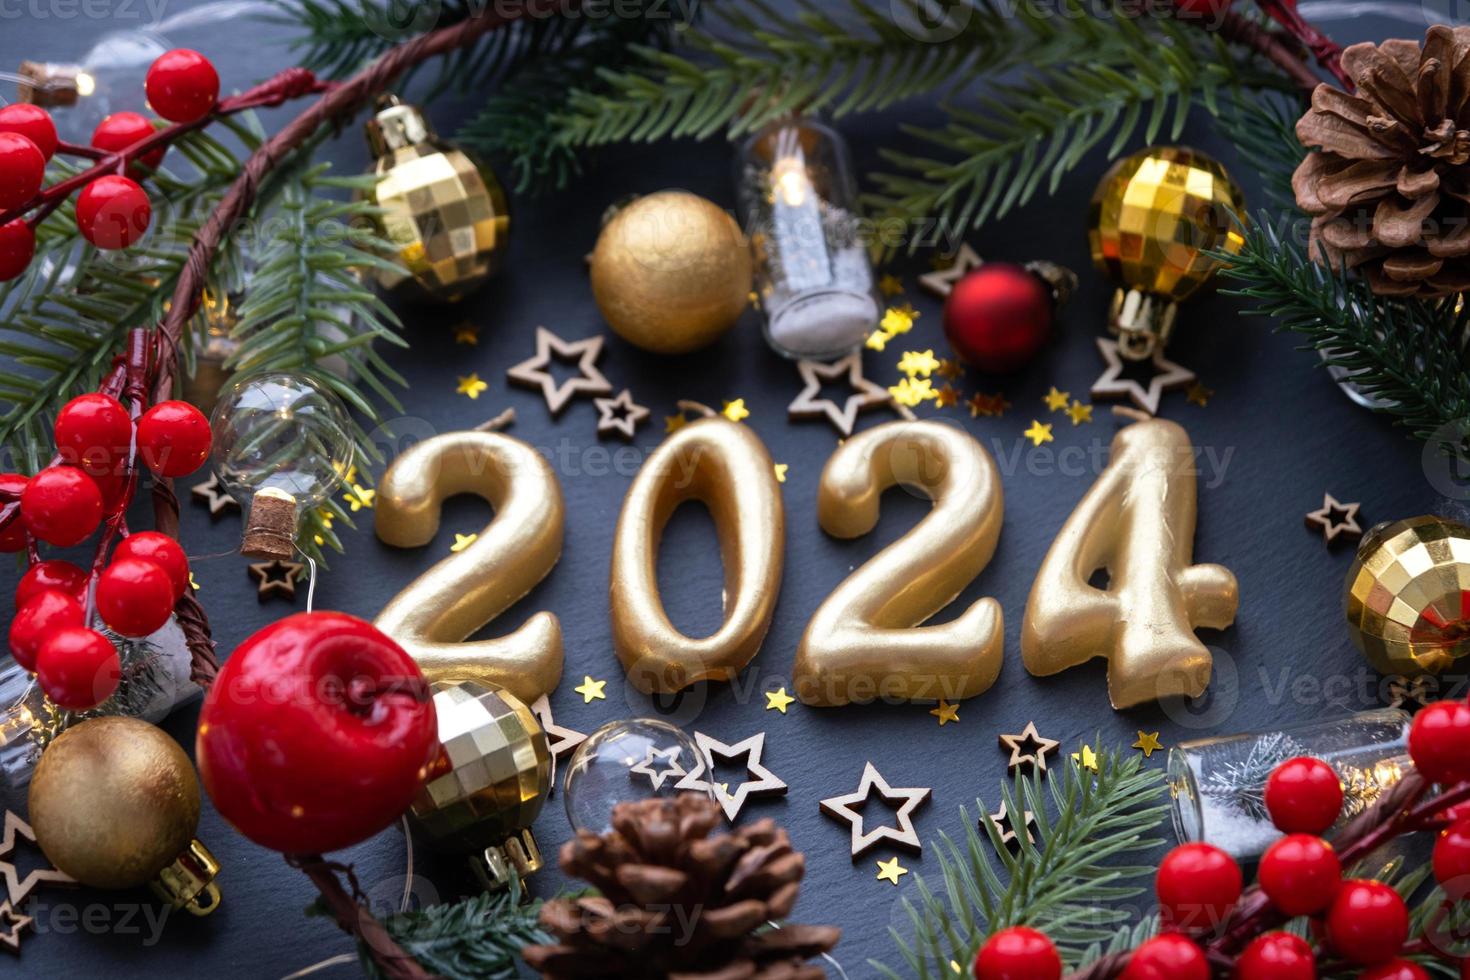 les figures dorées 2024 faites de bougies sur fond d'ardoise en pierre noire sont ornées d'un décor festif d'étoiles, de sequins, de branches de sapin, de boules et de guirlandes. carte de voeux, bonne année. photo